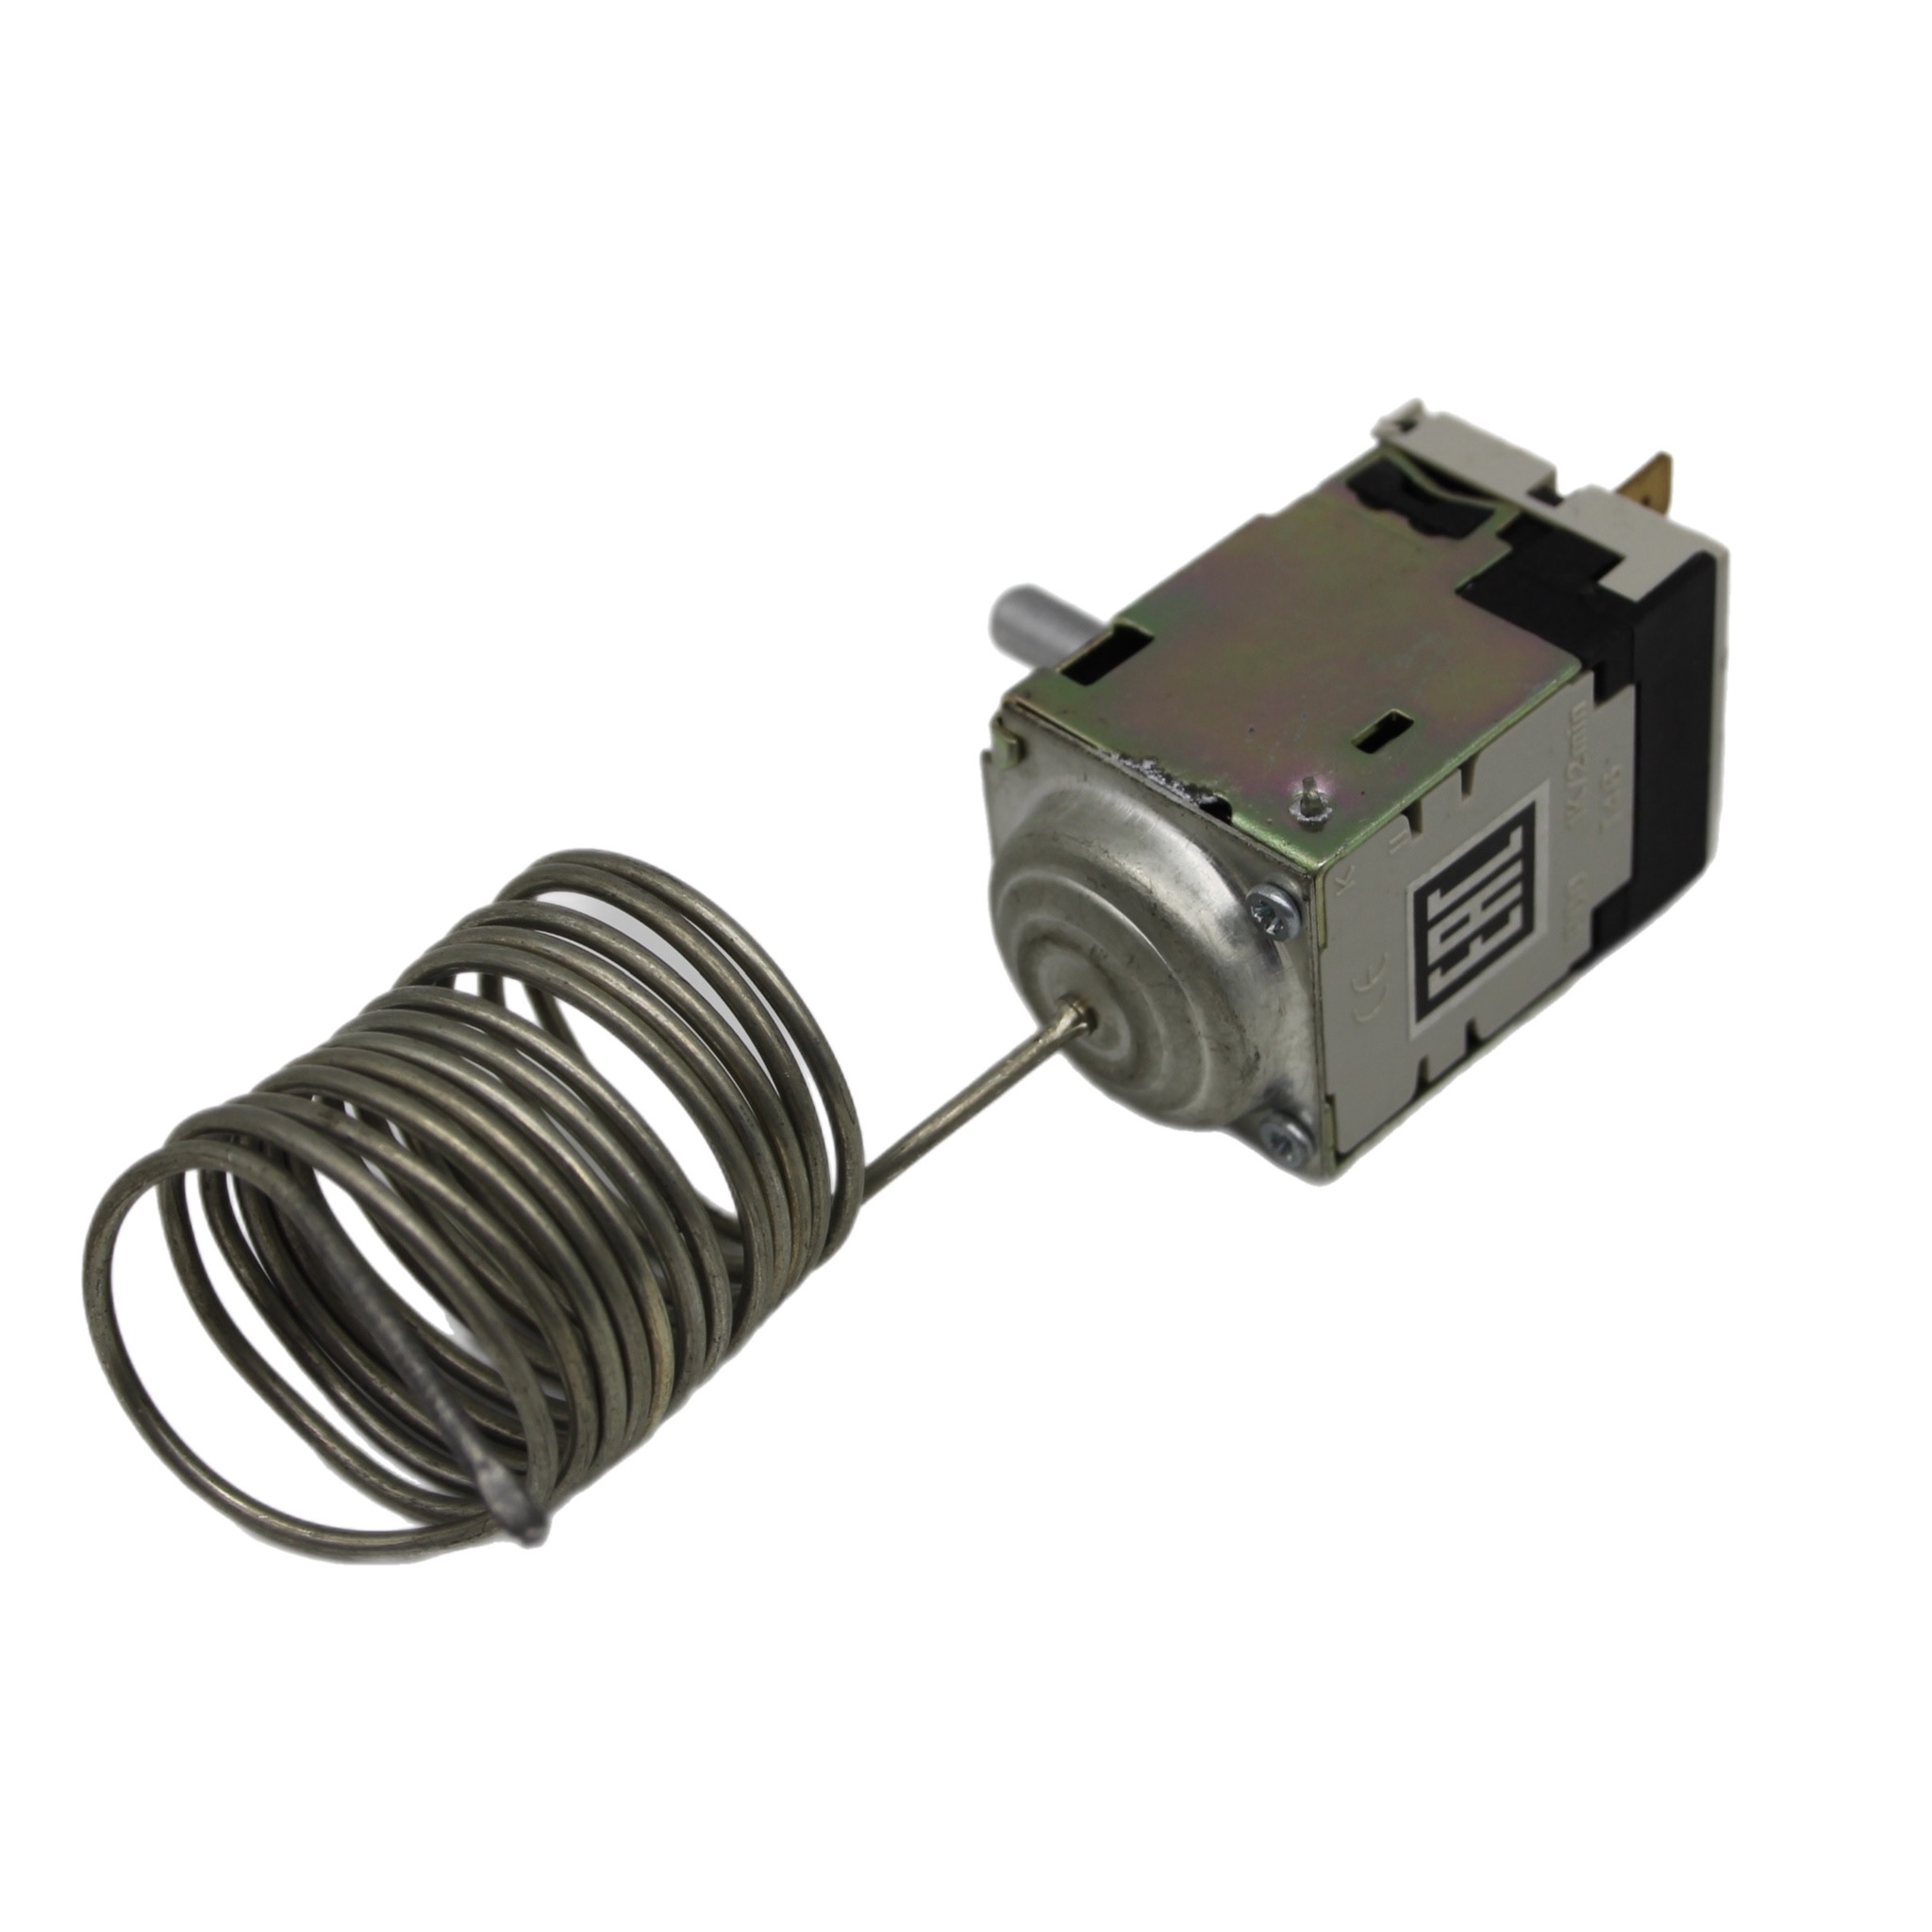 Термостат OEM Т-133, Т-133-1М выключатель для холодильника stinol ariston indesit 851049